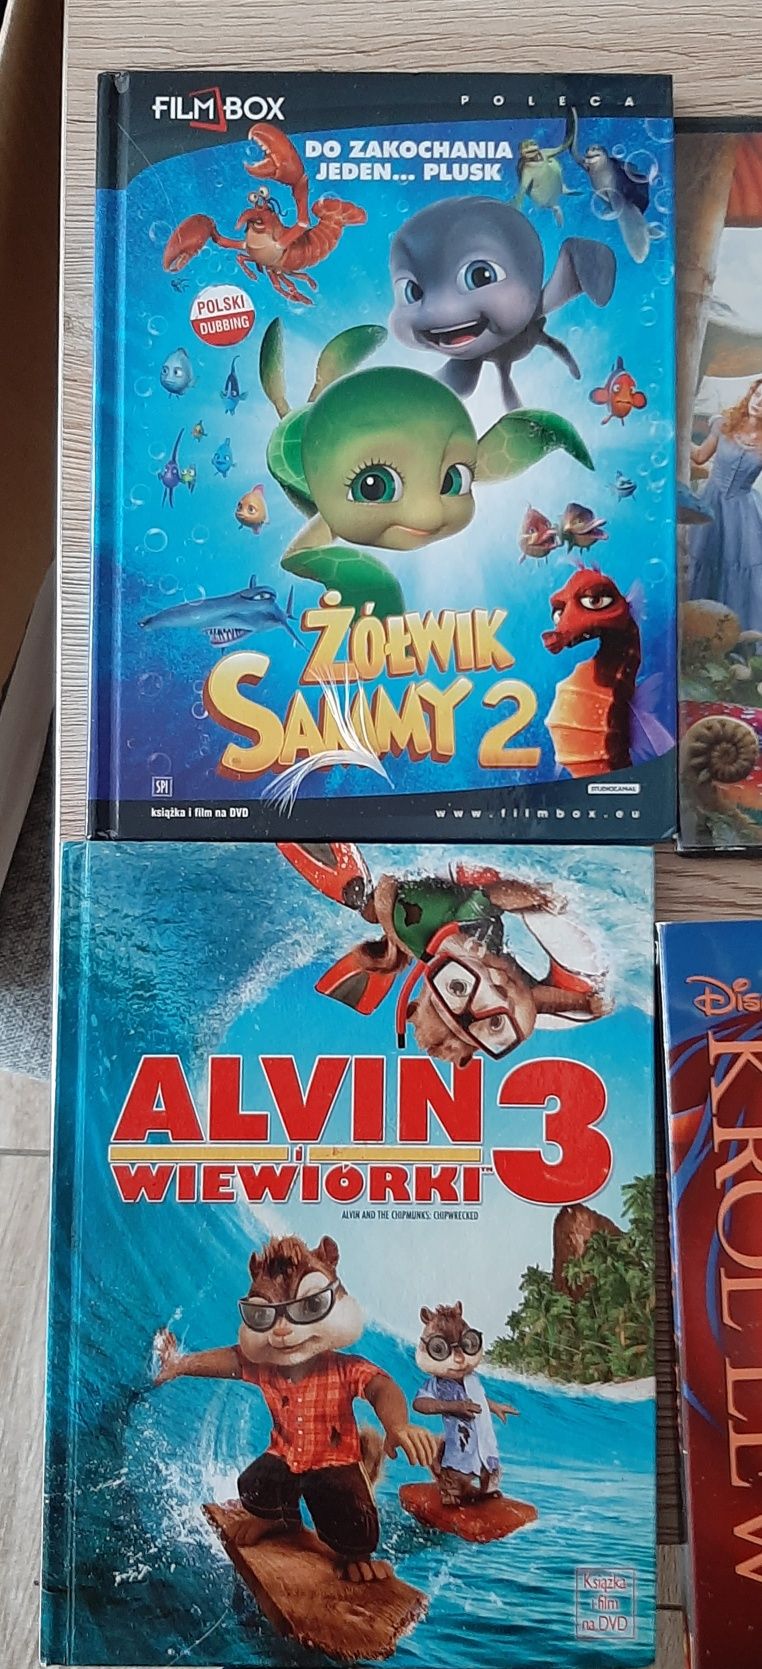 Bajki DVD Alvin wiewiórki; Żółwik Sammy